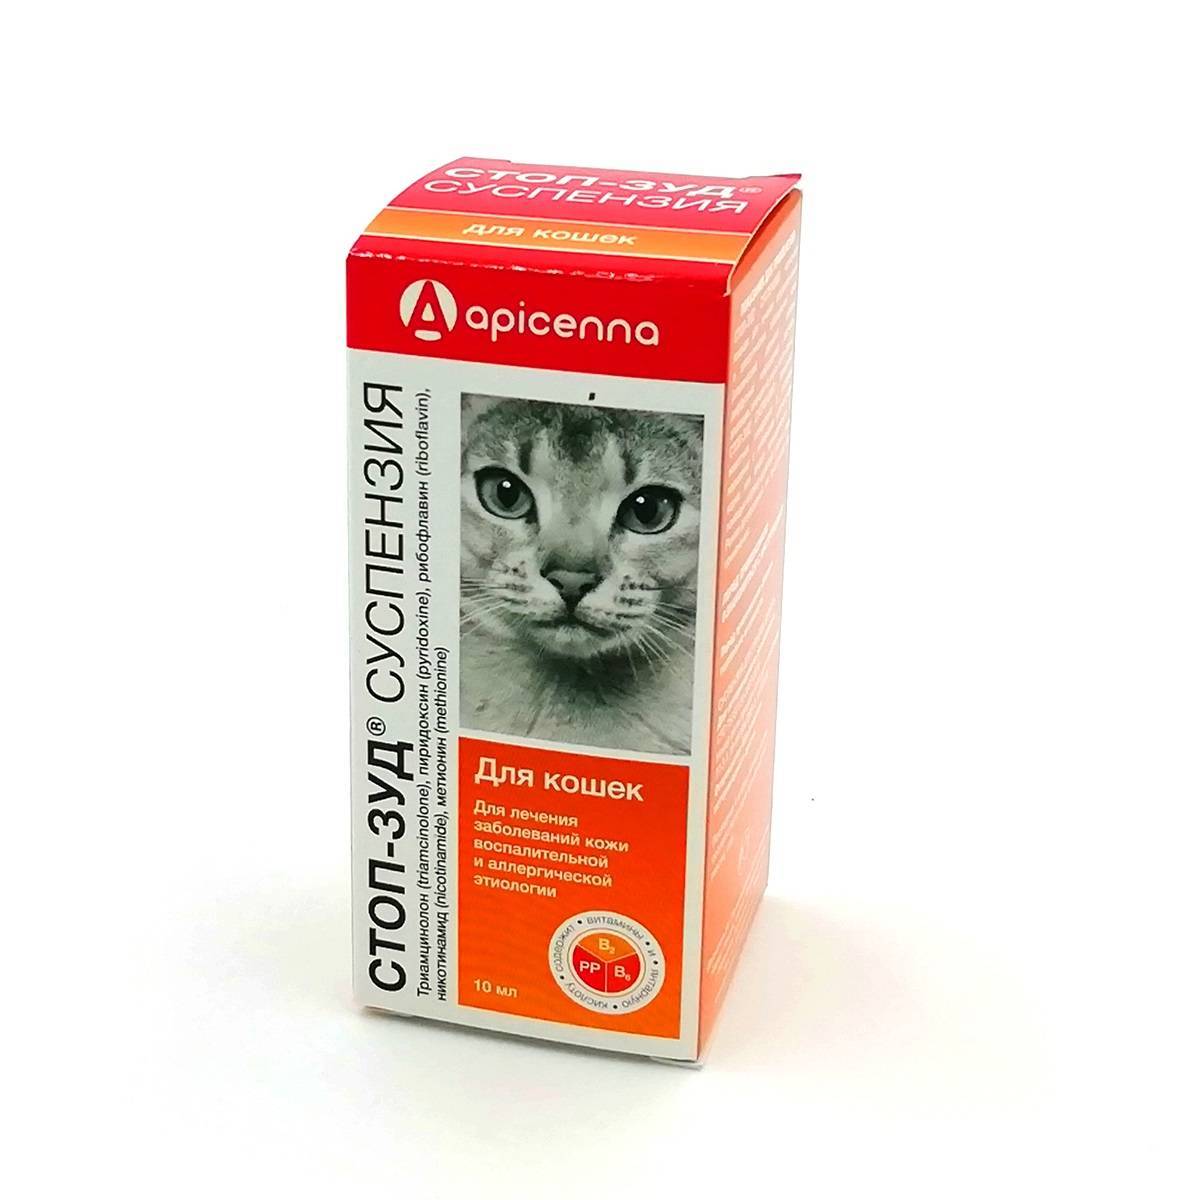 Стоп-зуд (спрей) для кошек и собак | отзывы о применении препаратов для животных от ветеринаров и заводчиков